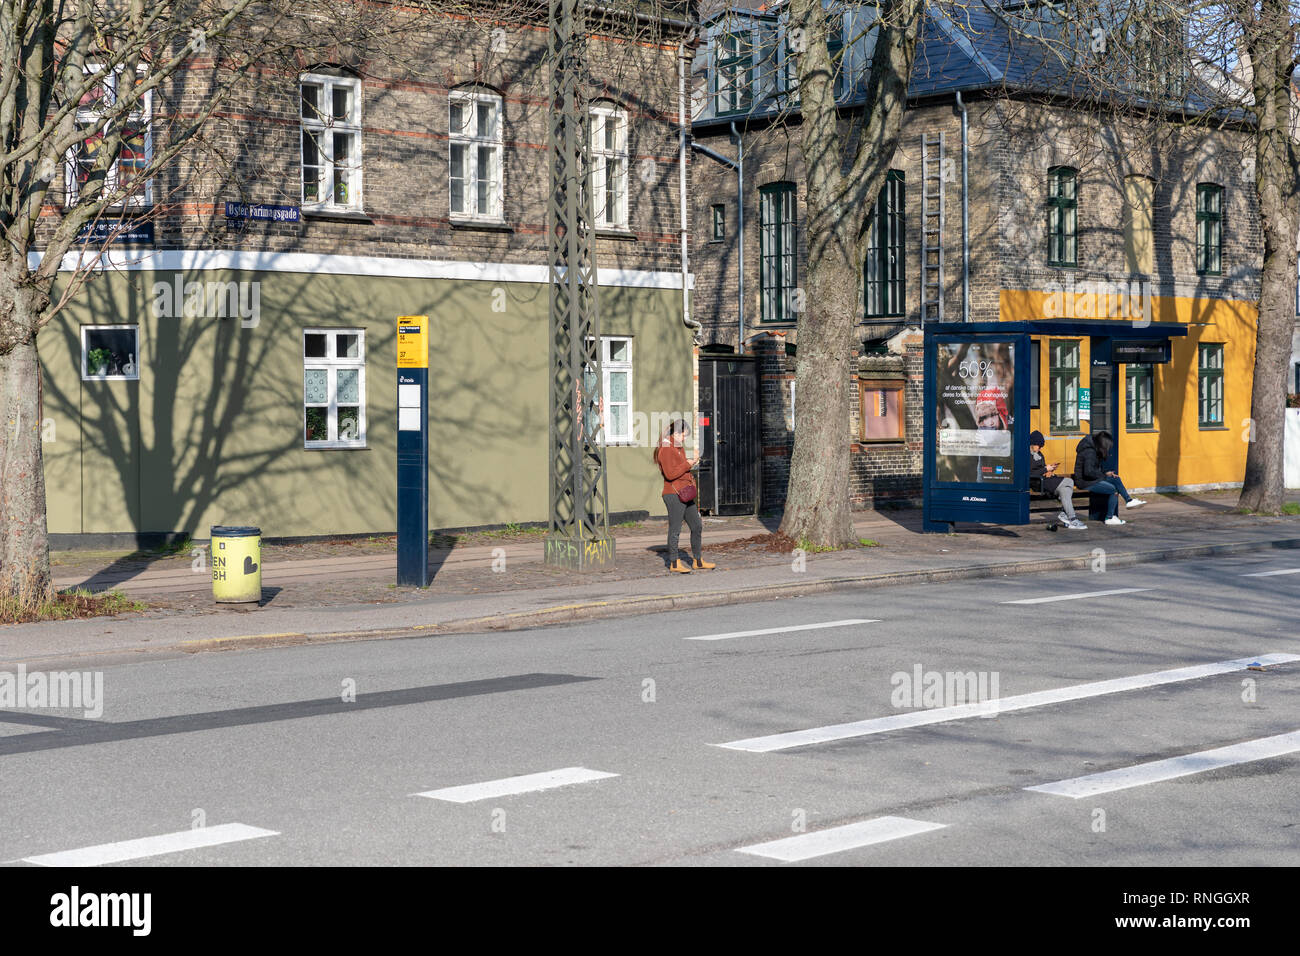 People at a bus stop, Øster Farimagsgade, Copenhagen, Denmark Stock Photo